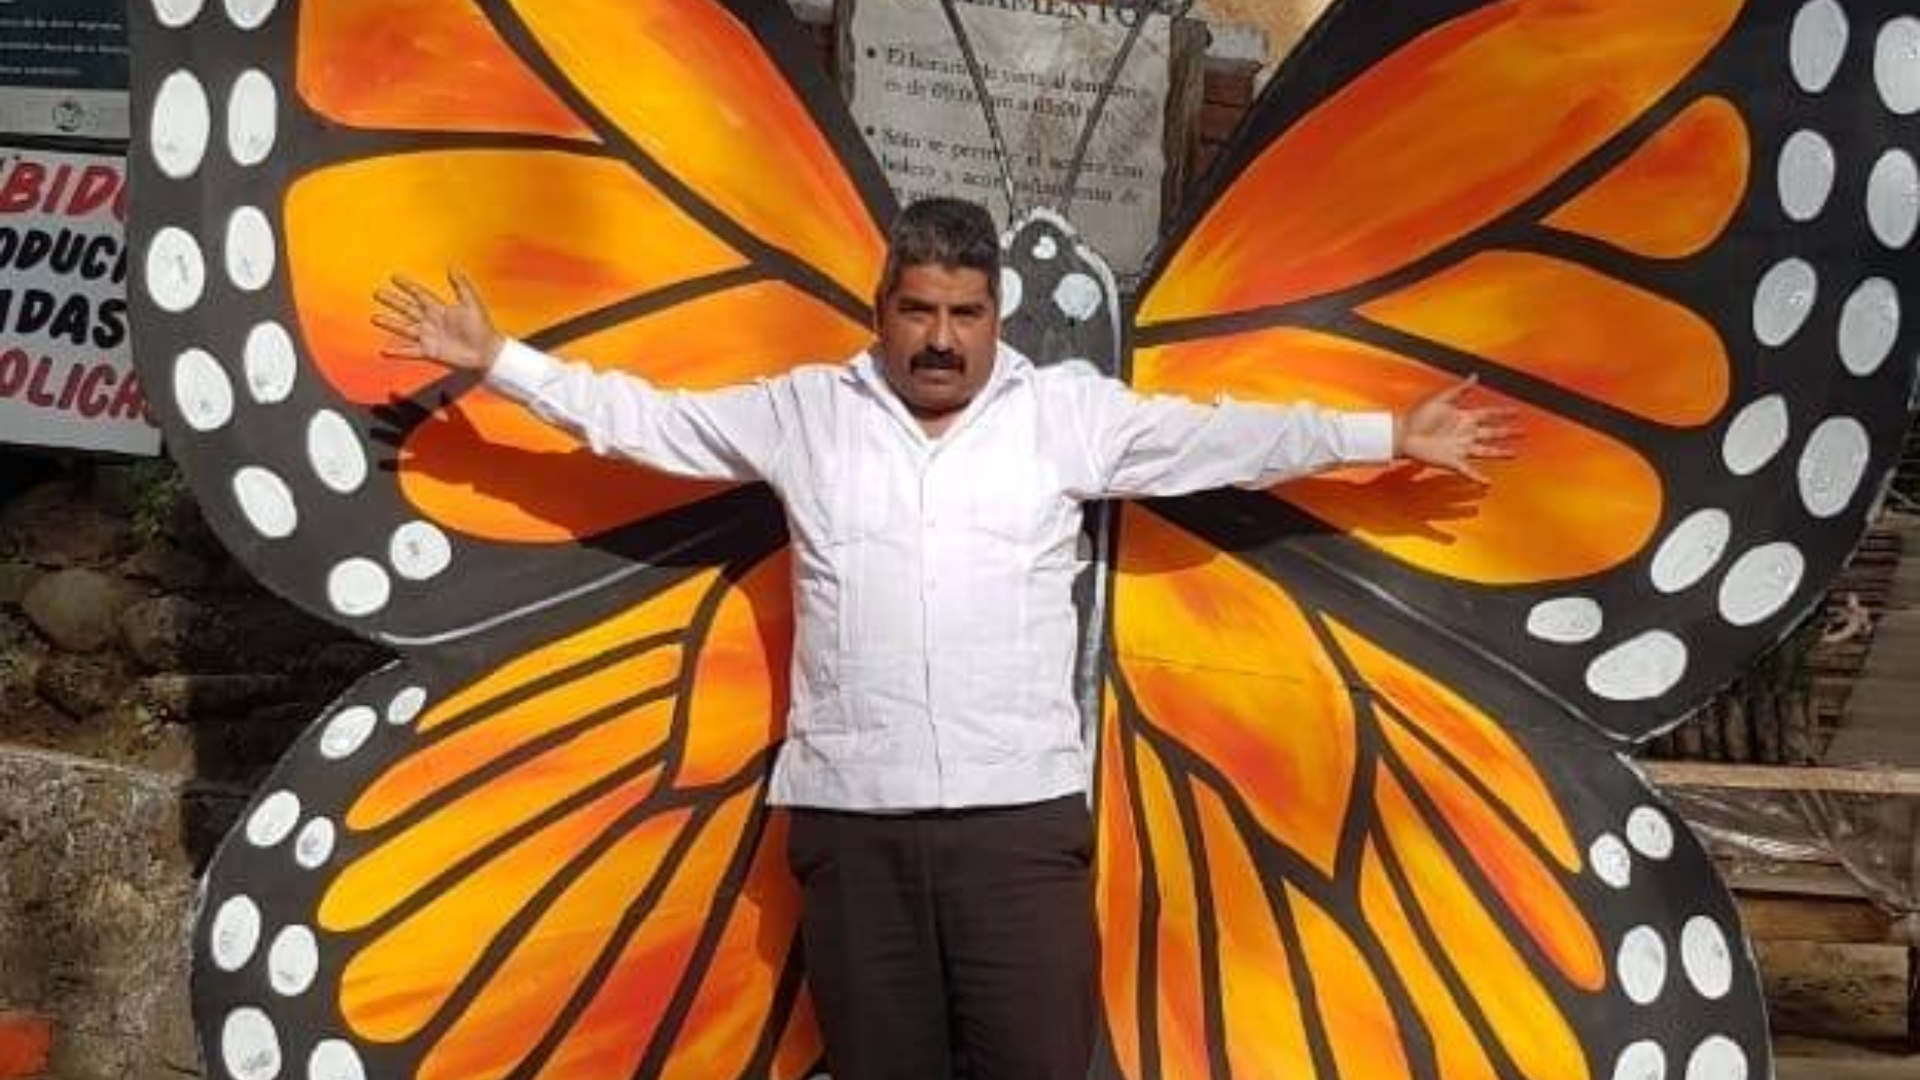 Homero Gómez González, defensor del santuario de la mariposa monarca en michoacán, fue encontrado muerto y no se ha castigado a los responsables (Foto: Archivo)